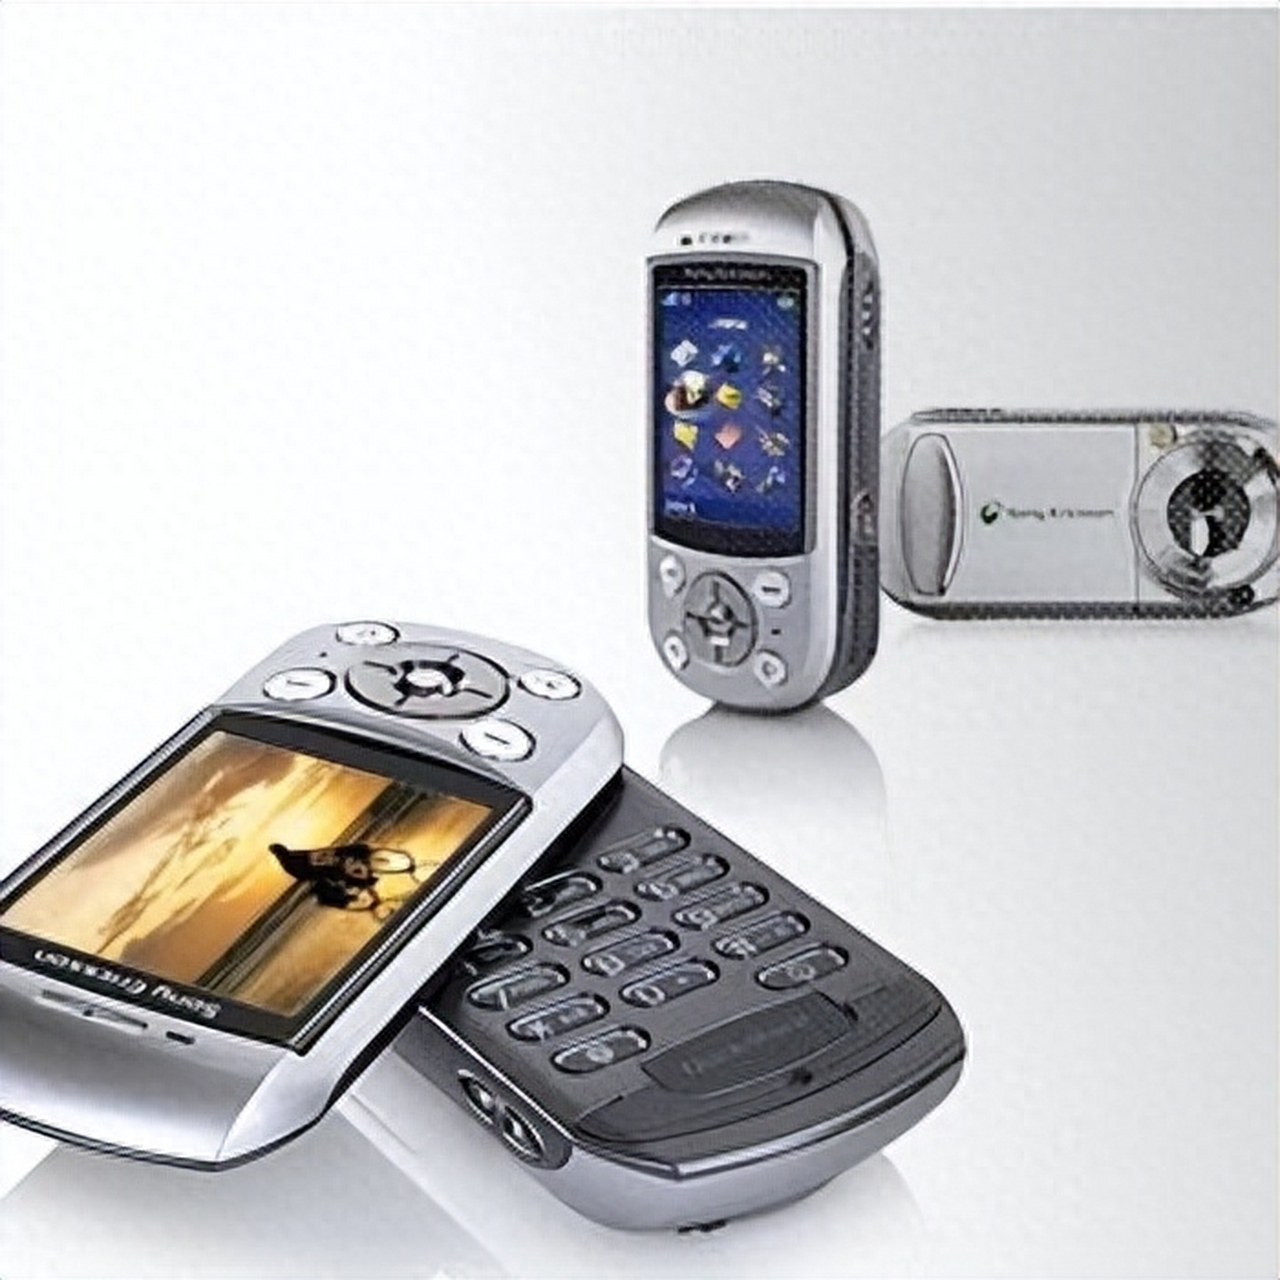 怀念20年前的科技风情?索爱s700c手机惊艳来袭!